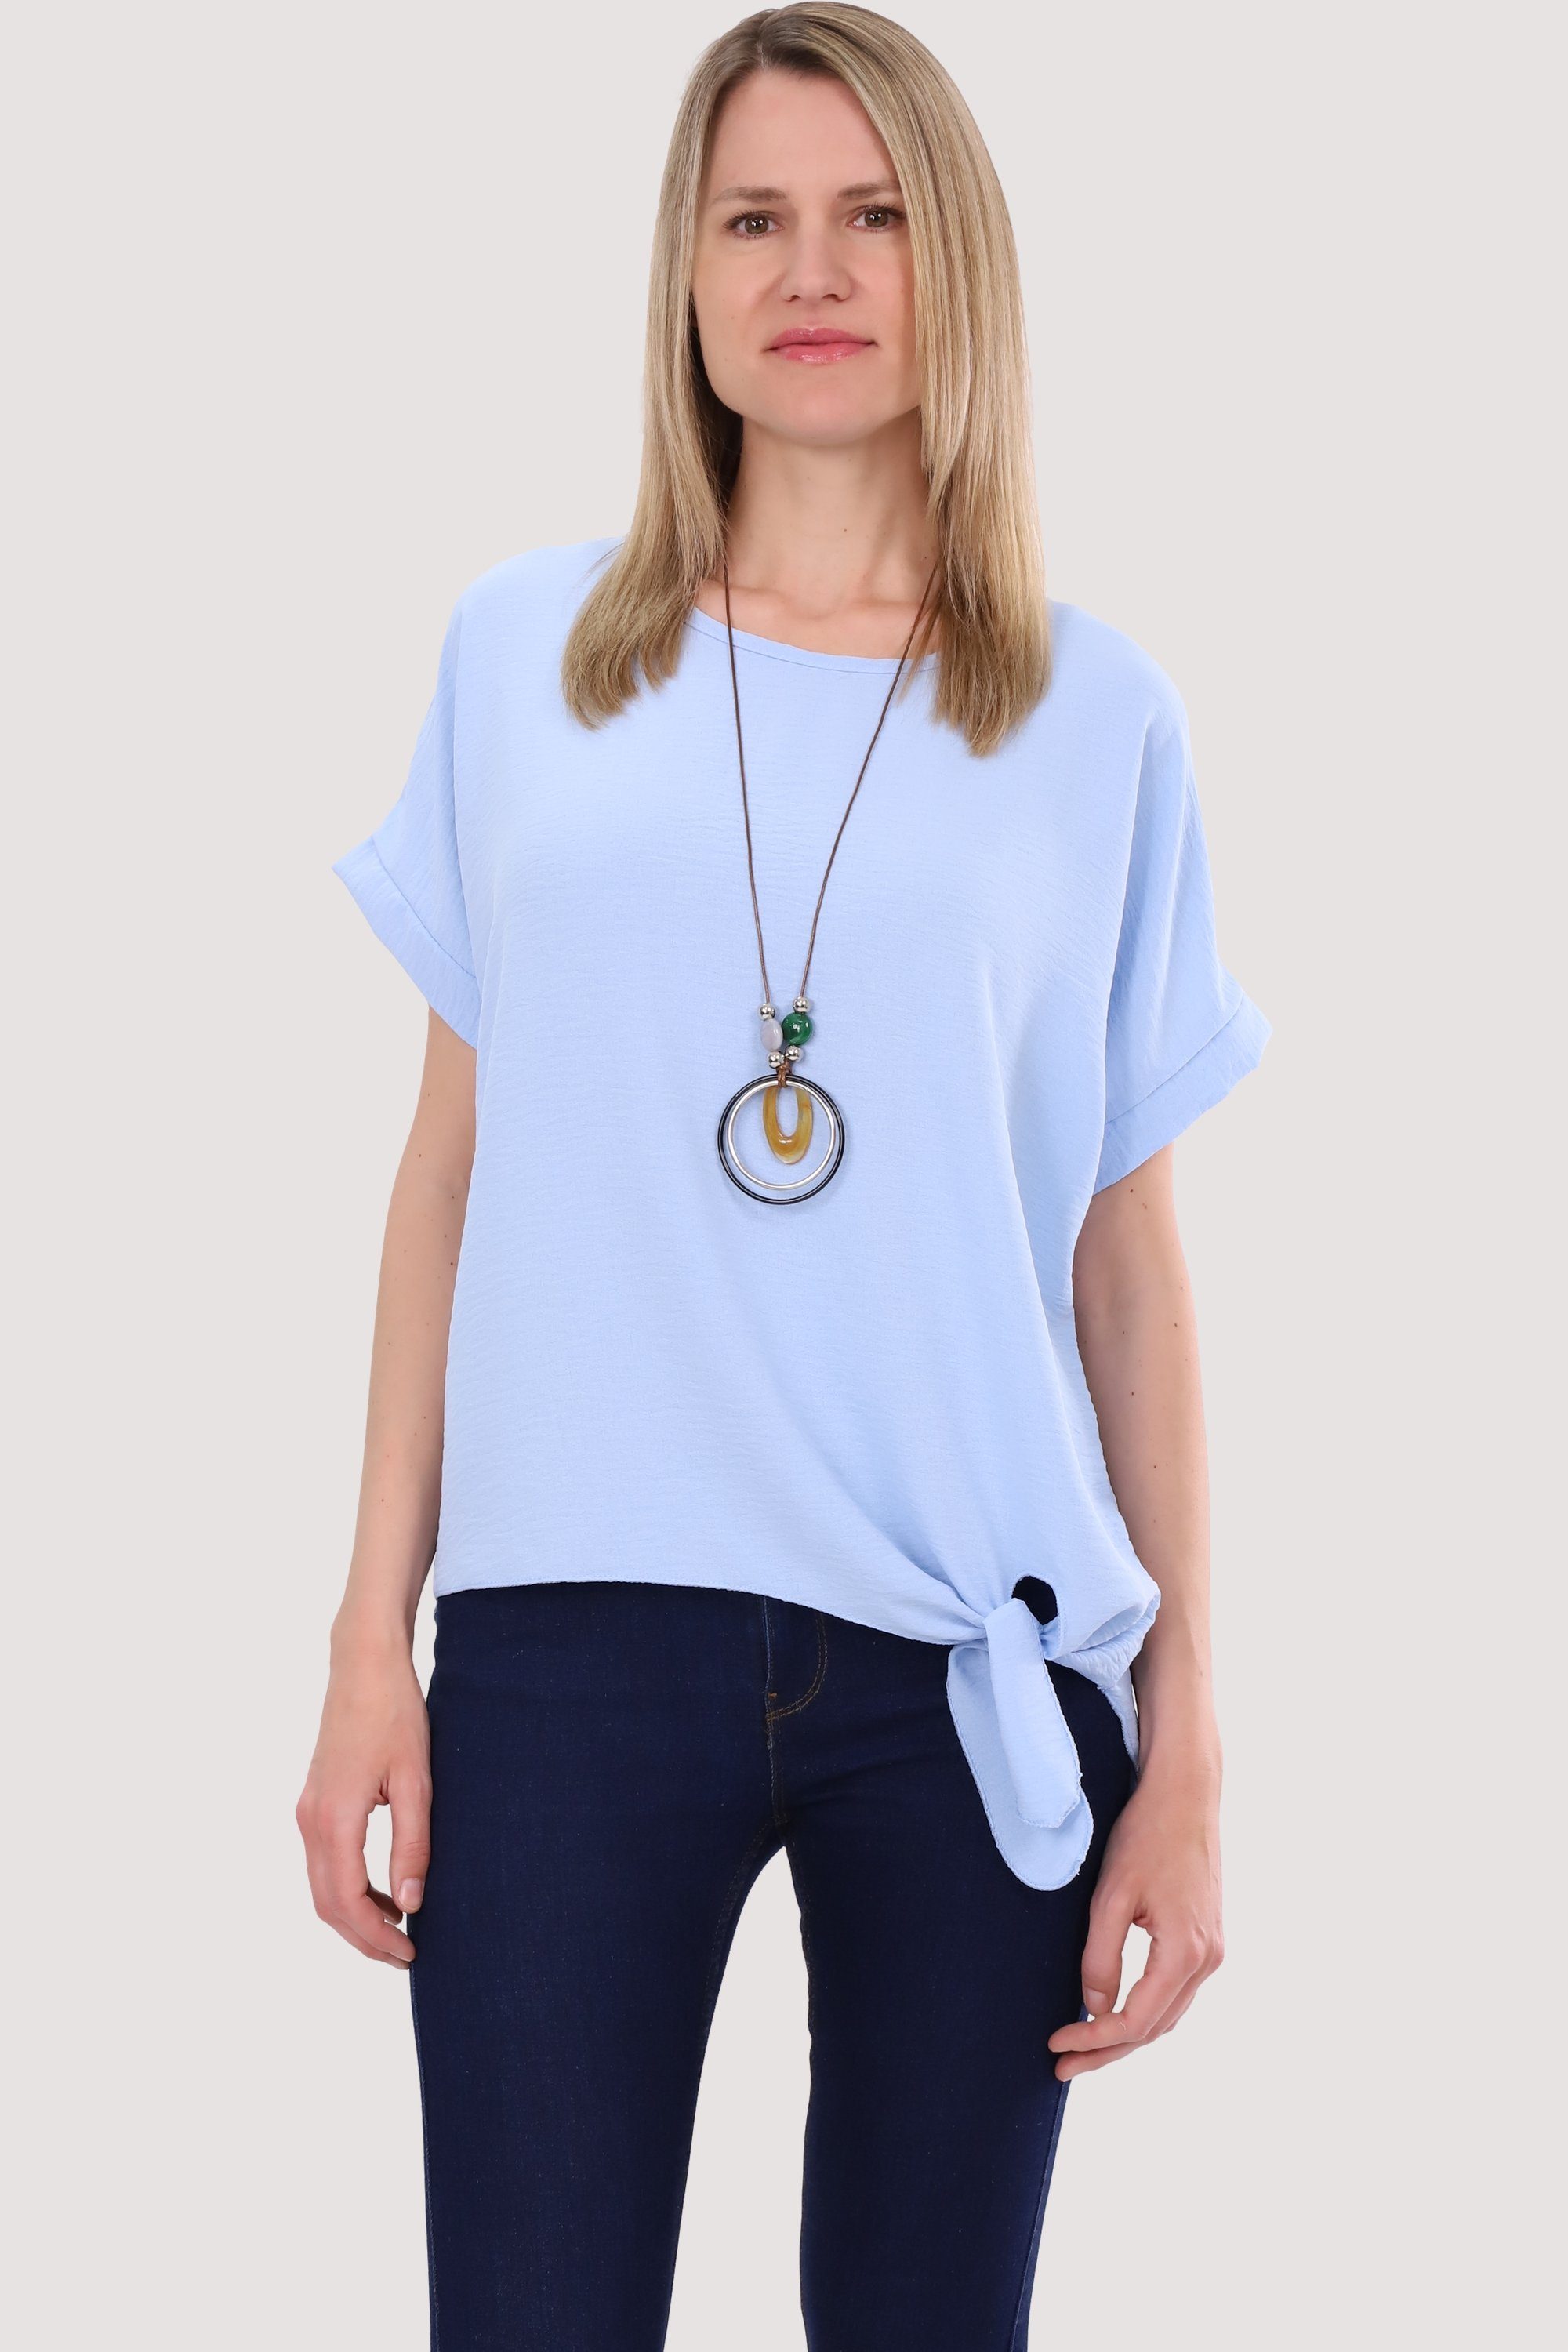 malito more than fashion Blusenshirt 10508 mit Bindeknoten und Kette Einheitsgröße hellblau | T-Shirts